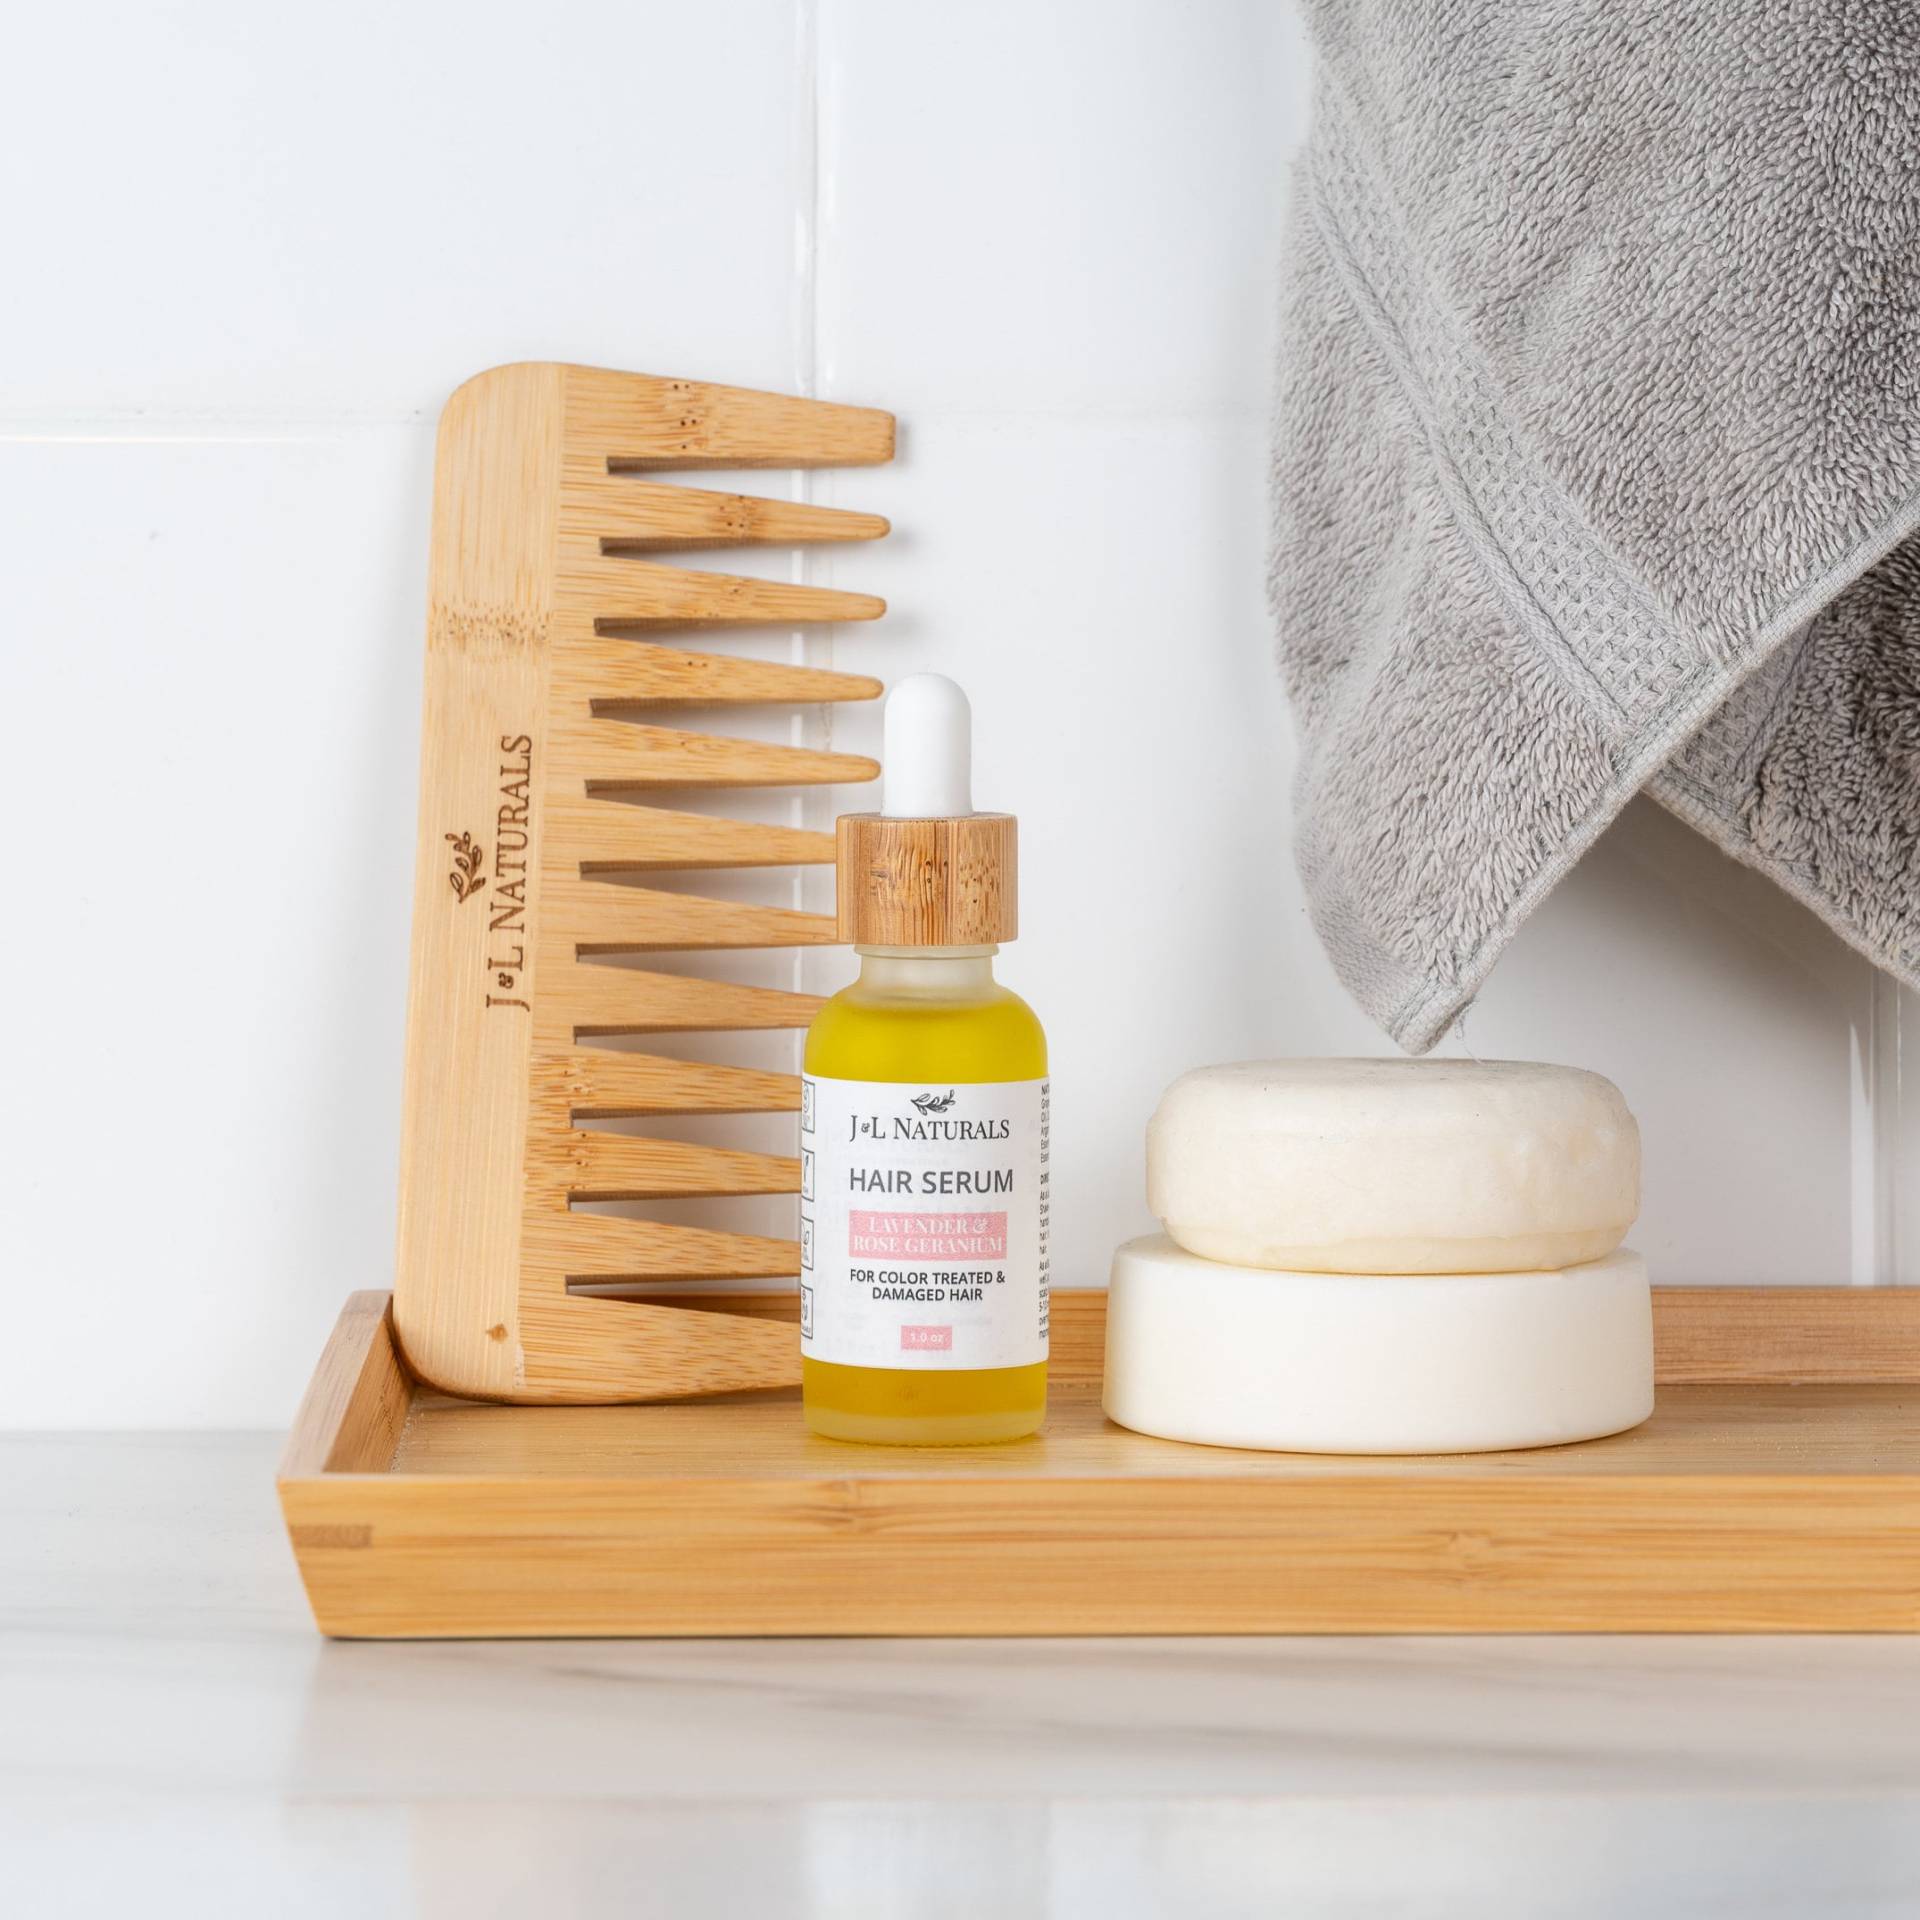 Lavendel + Rosengeranie | Stärke Haarpflege Kit Natürliches Haarpflege-Set Mit Sulfatfreiem Shampoo Und Conditioner Bar Veganem Haarserum von JnLNaturals